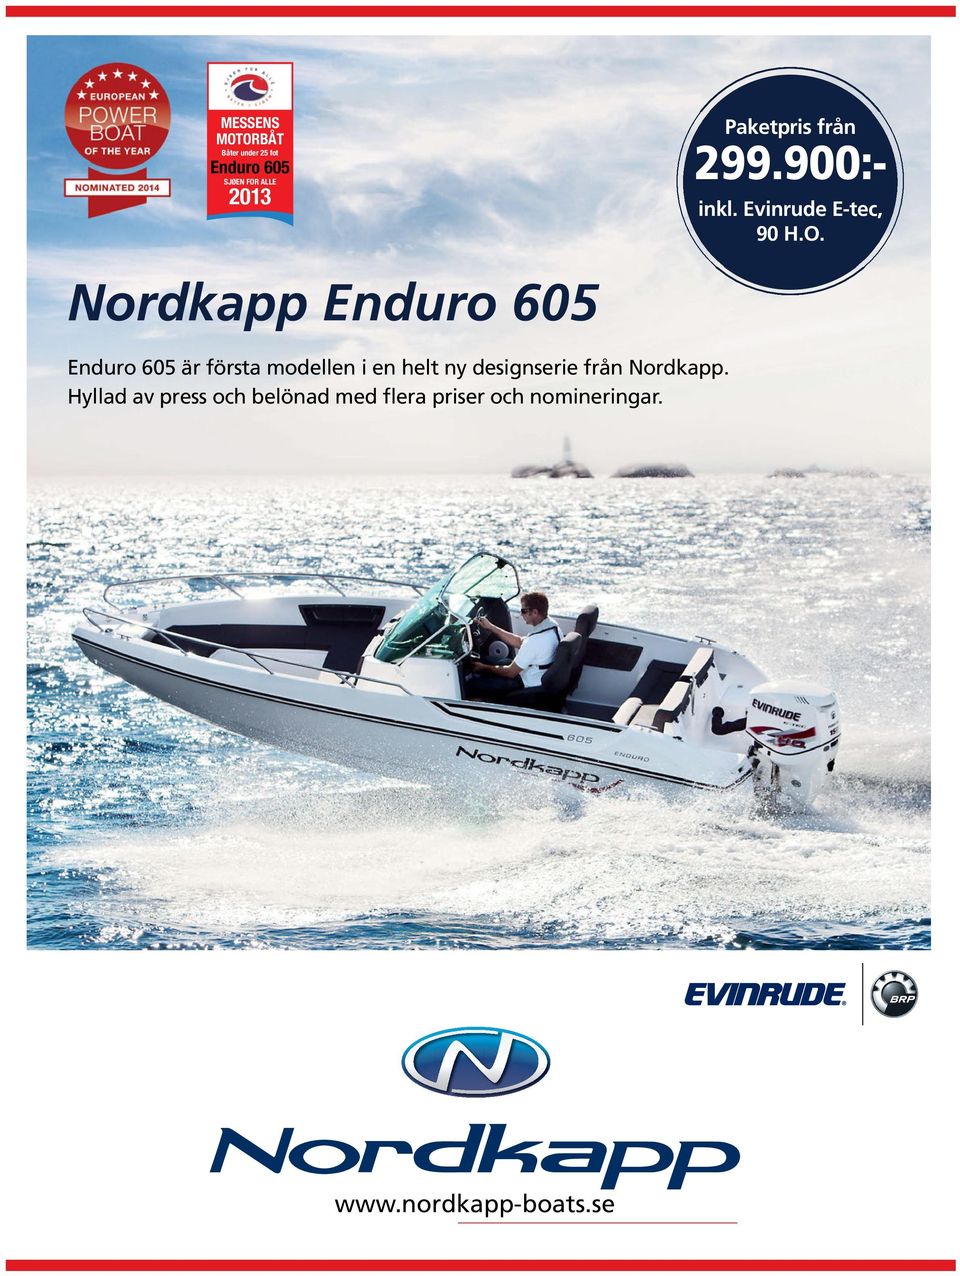 Nordkapp Enduro 605 Enduro 605 är första modellen i en helt ny designserie